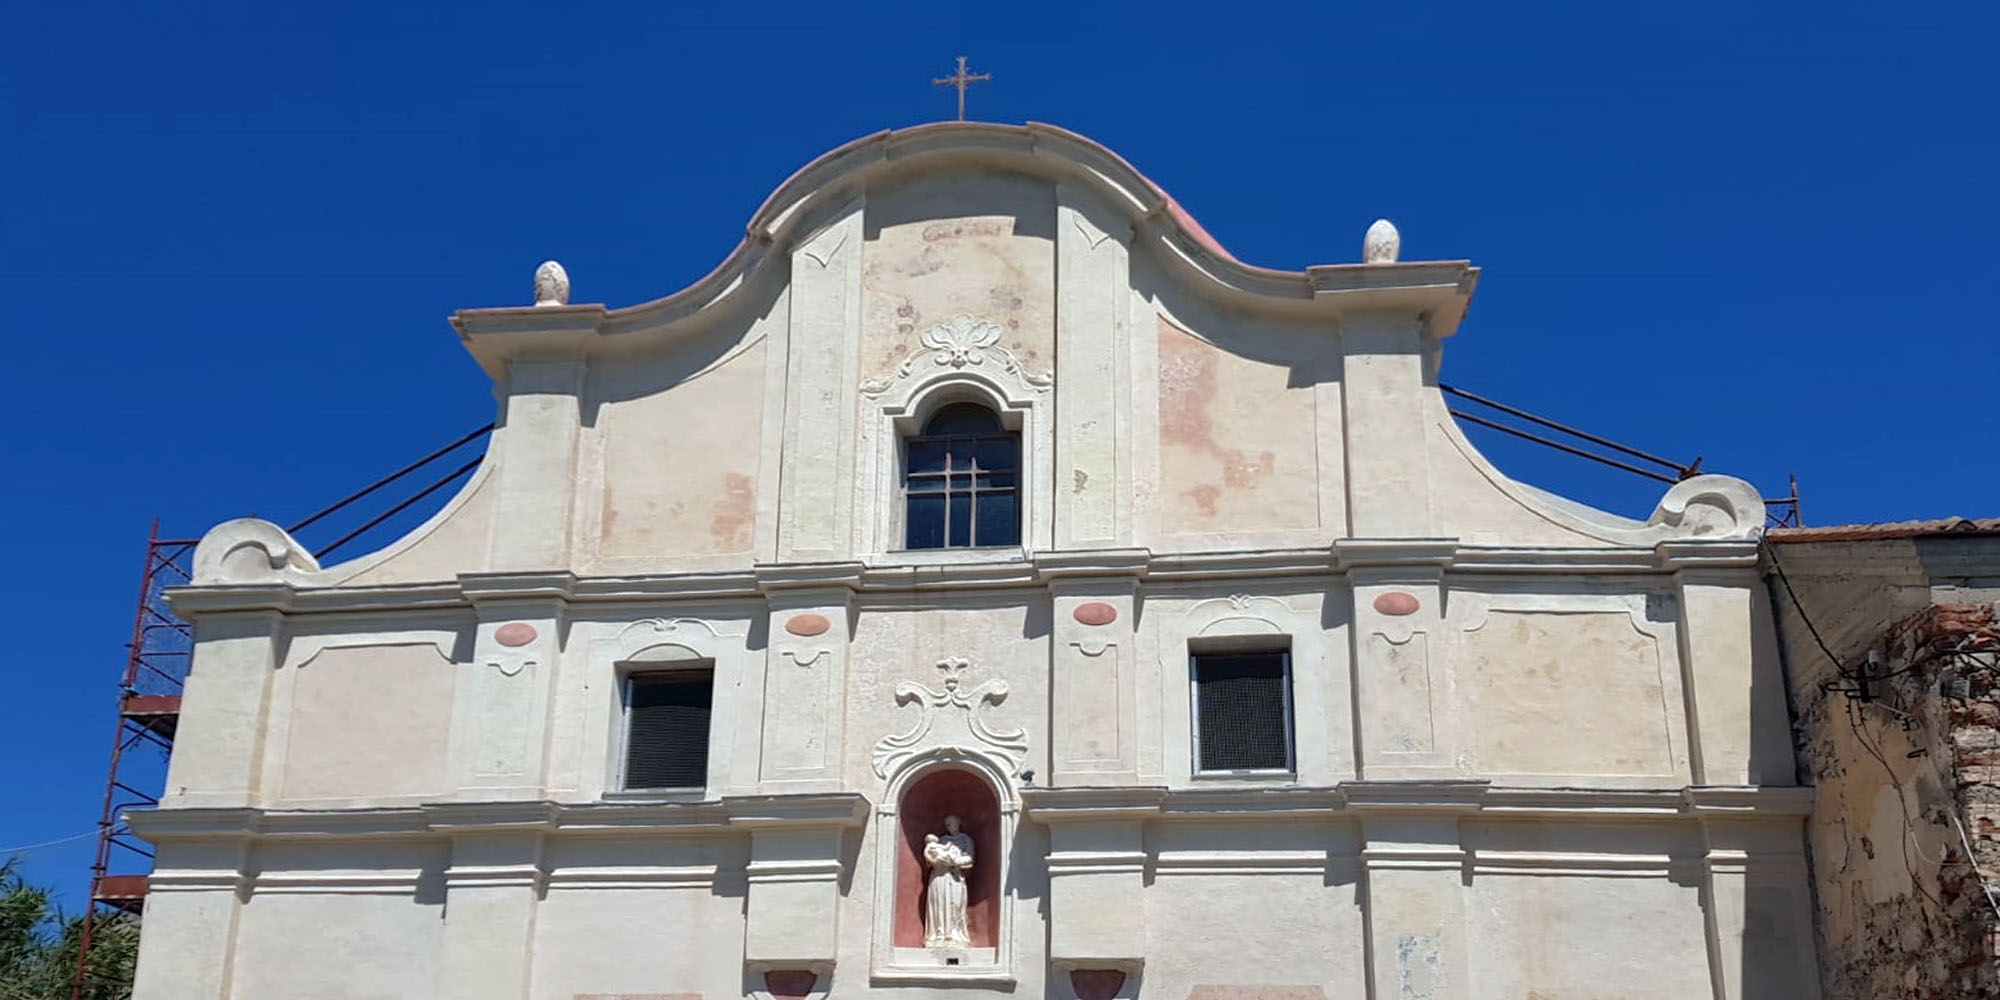 Chiesa di San Antonio, Isola di Capraia, Livorno